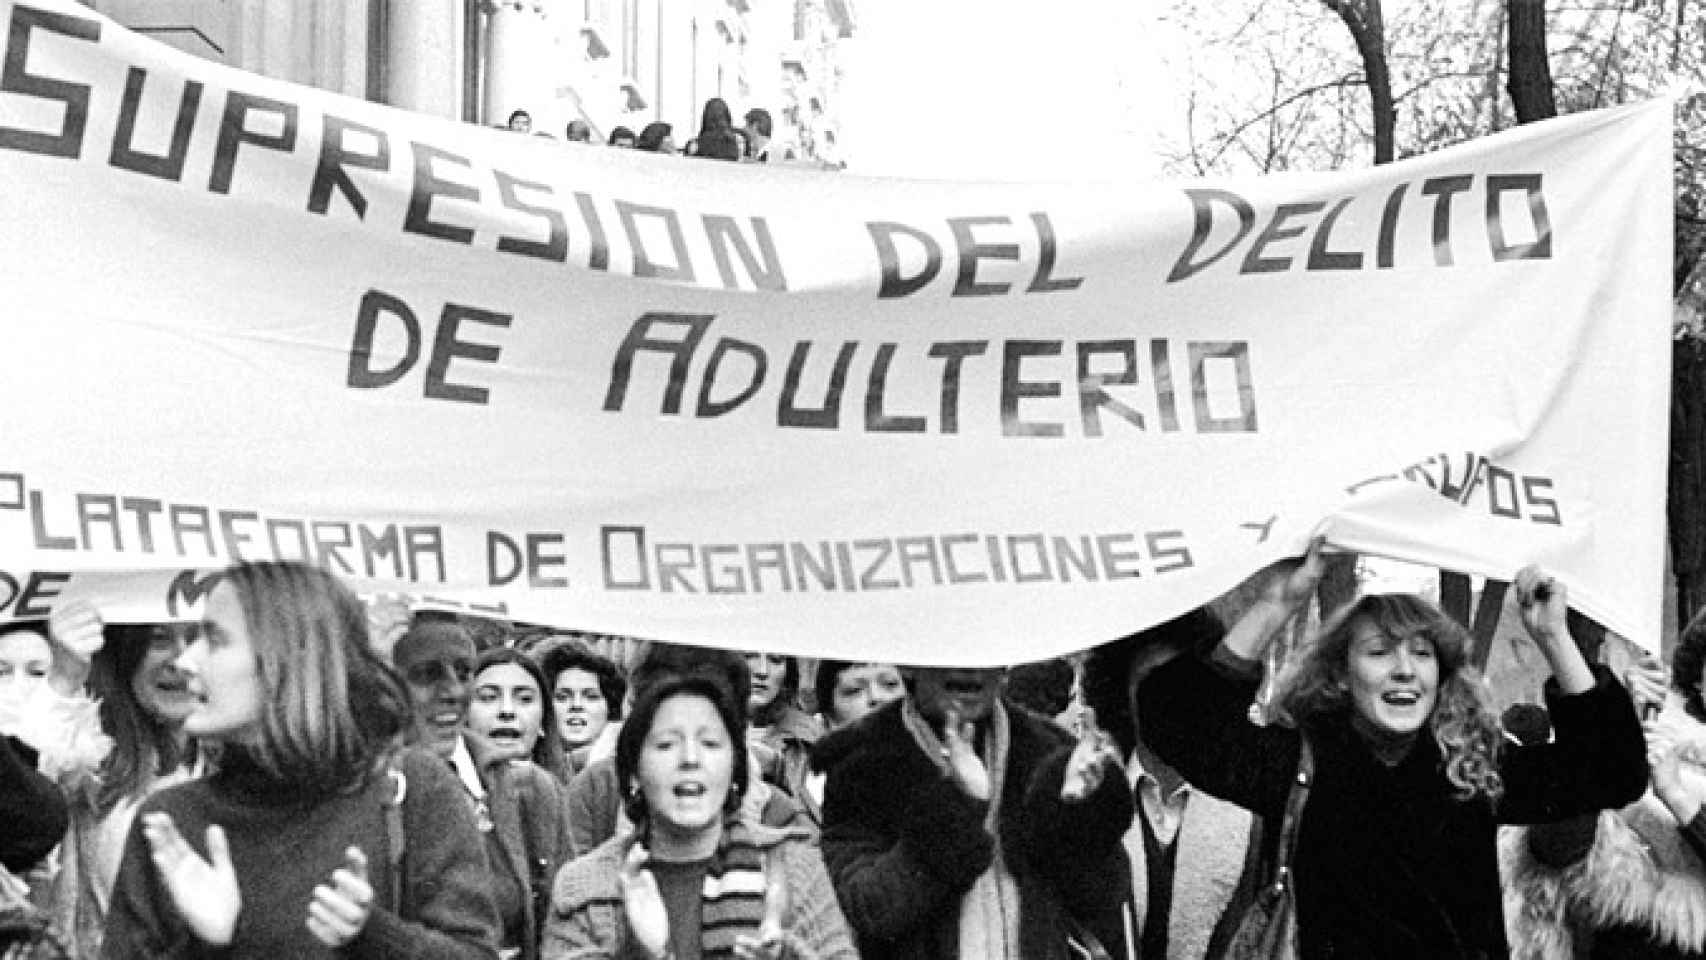 Manifestación por la supresión del delito de adulterio en España de las precursoras del feminismo / EFE